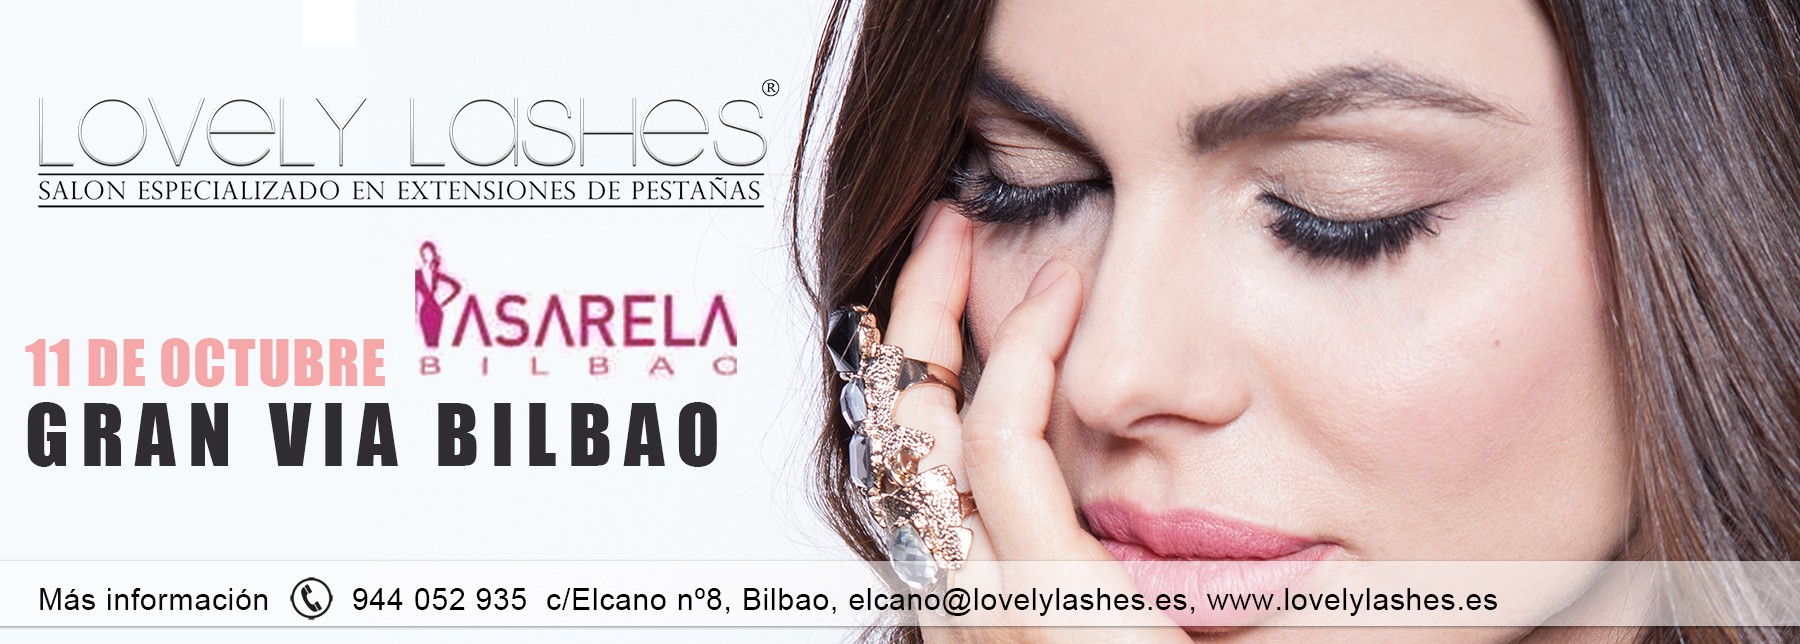 Lovely Lashes estará presente en la Pasarela Urbana de Bilbao